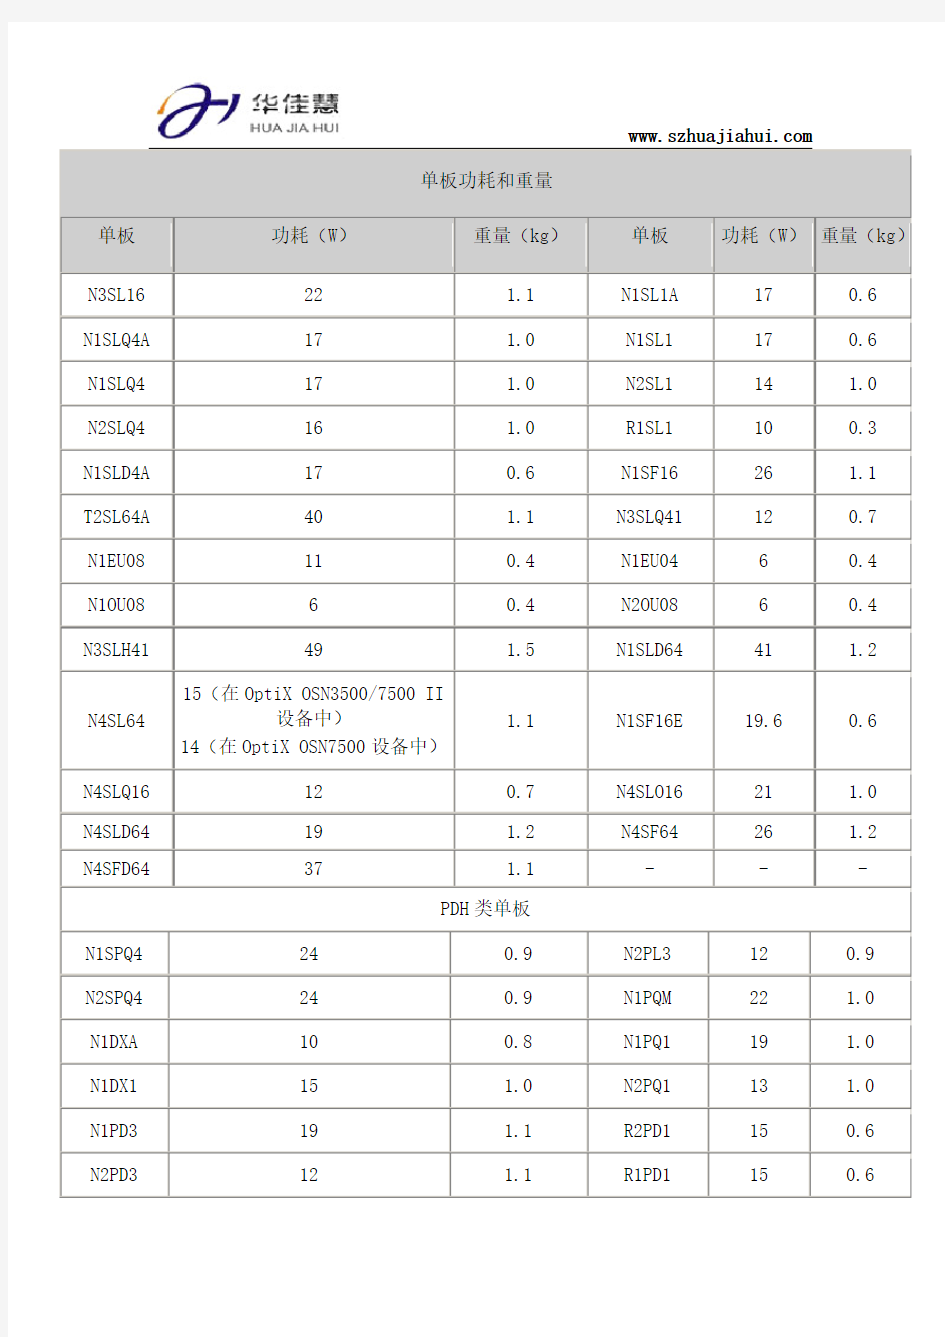 OSN3500_OSN7500单板功耗和重量速查表